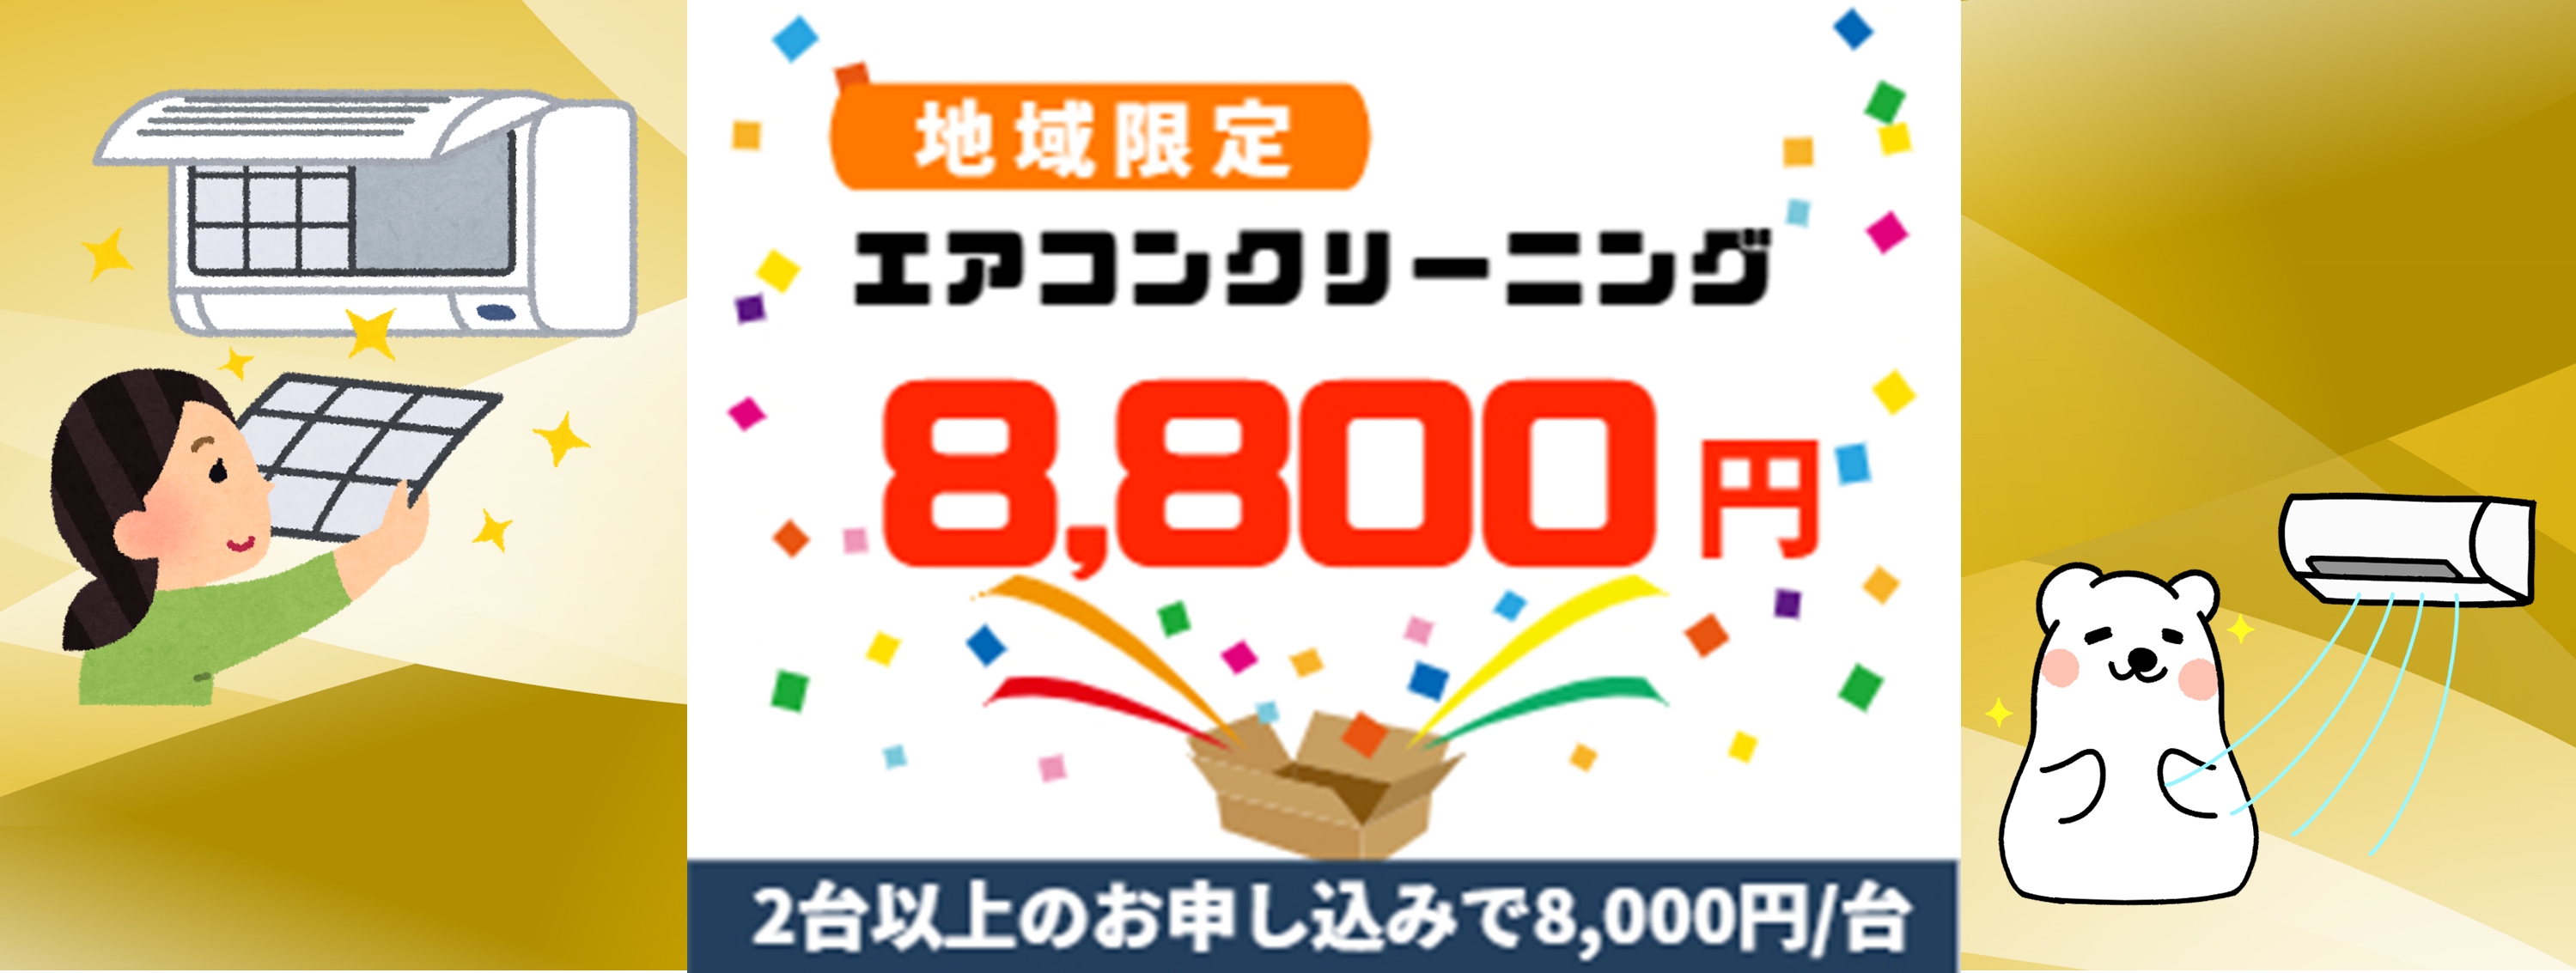 松田町キャンペーン価格